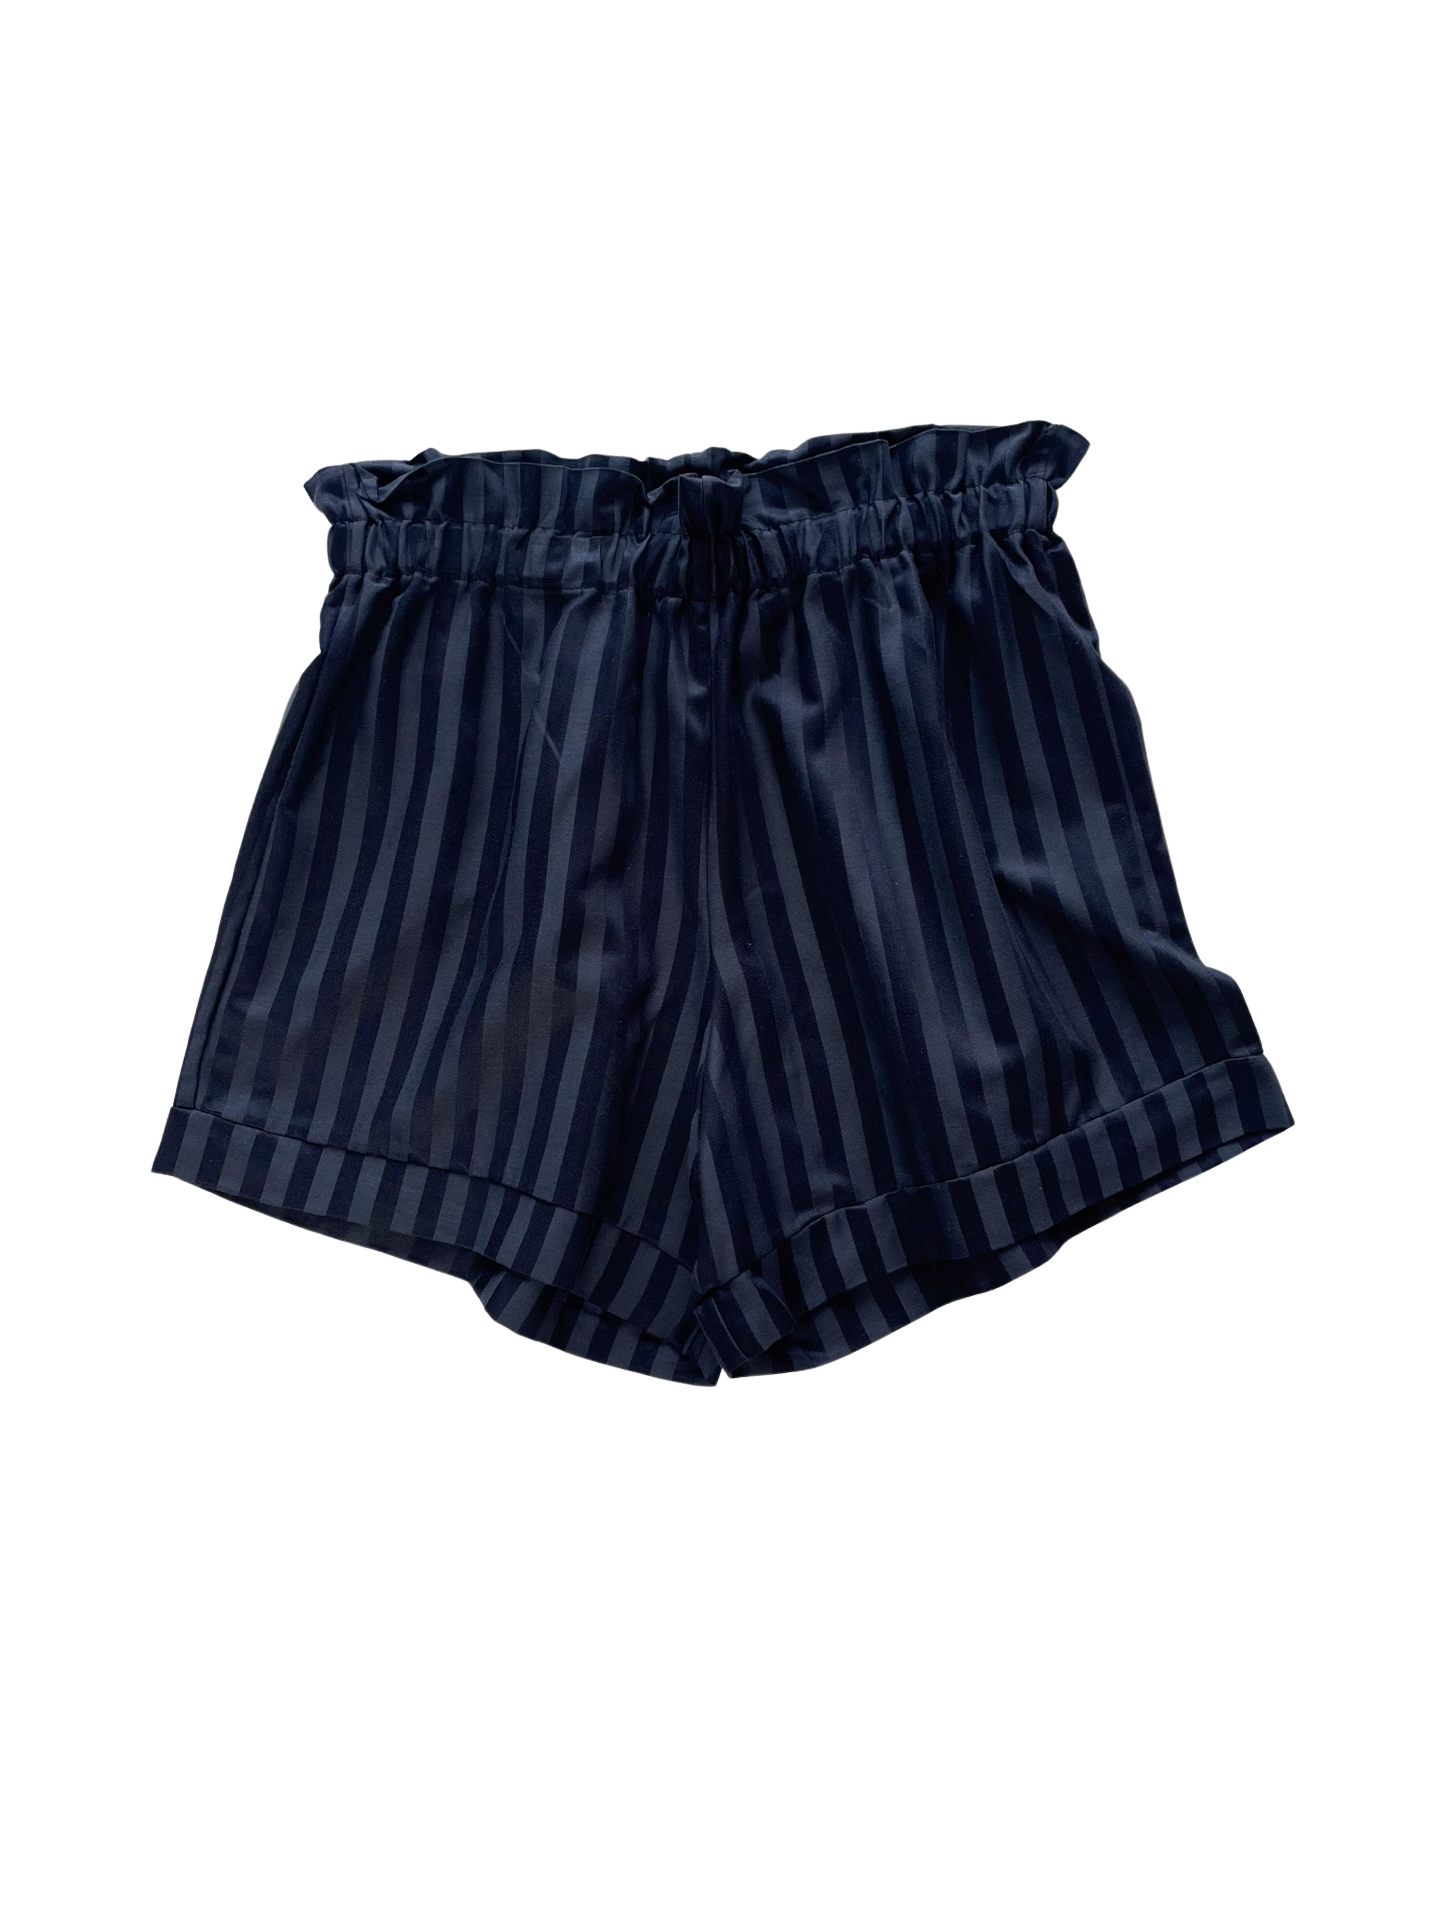 Viscose ruffle shorts / dark navy